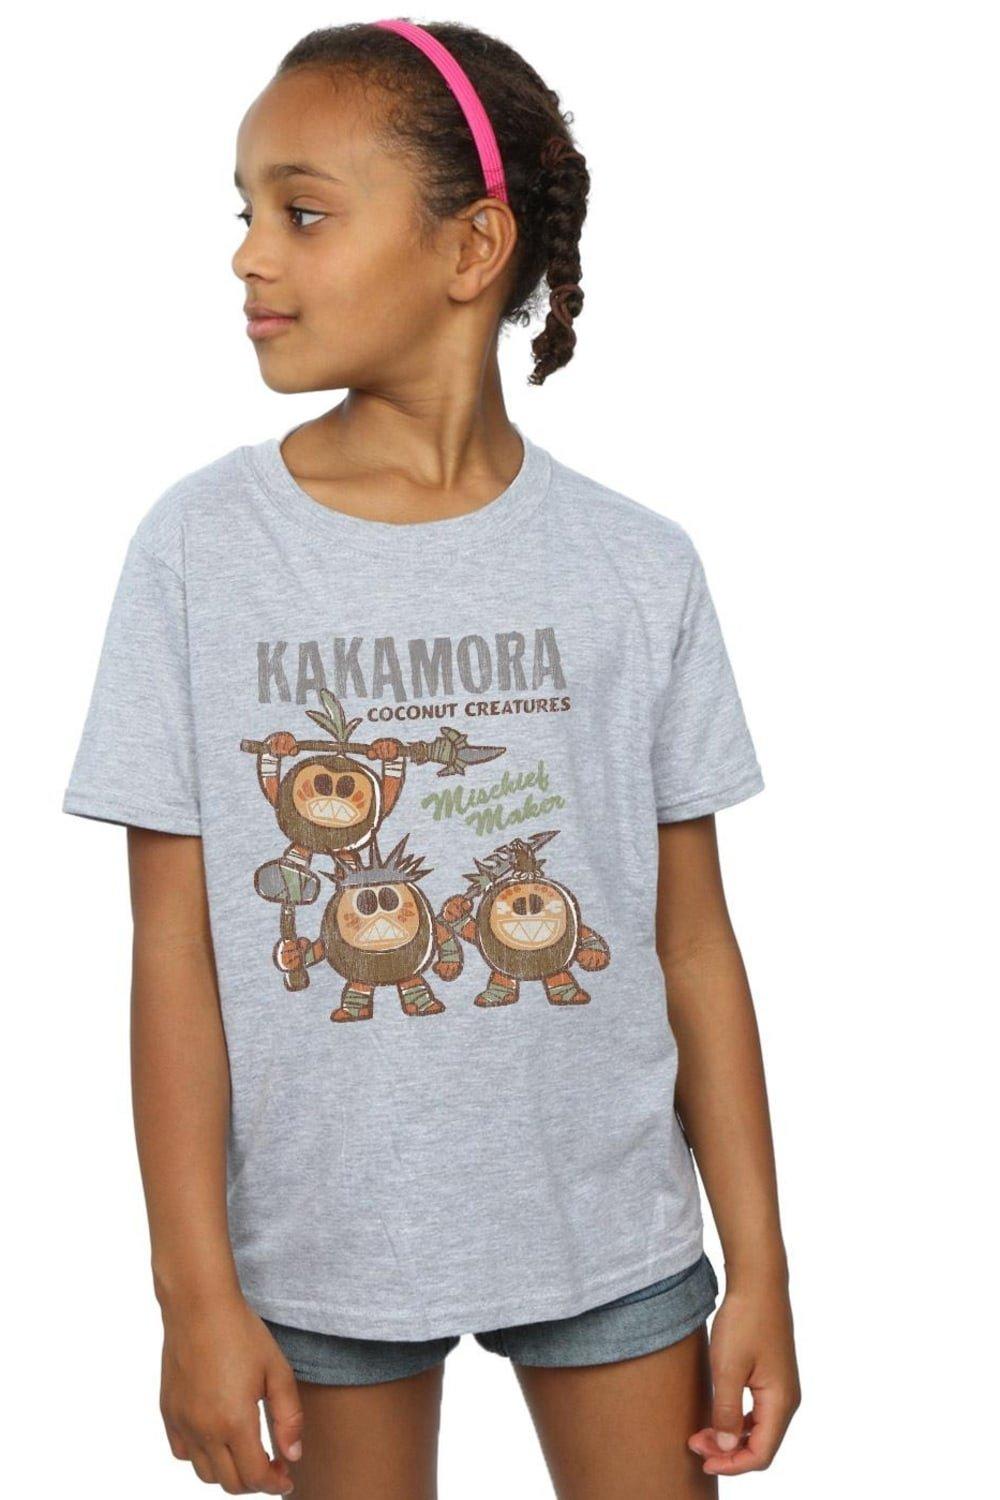 Хлопковая футболка «Моана Какамора» Disney, серый